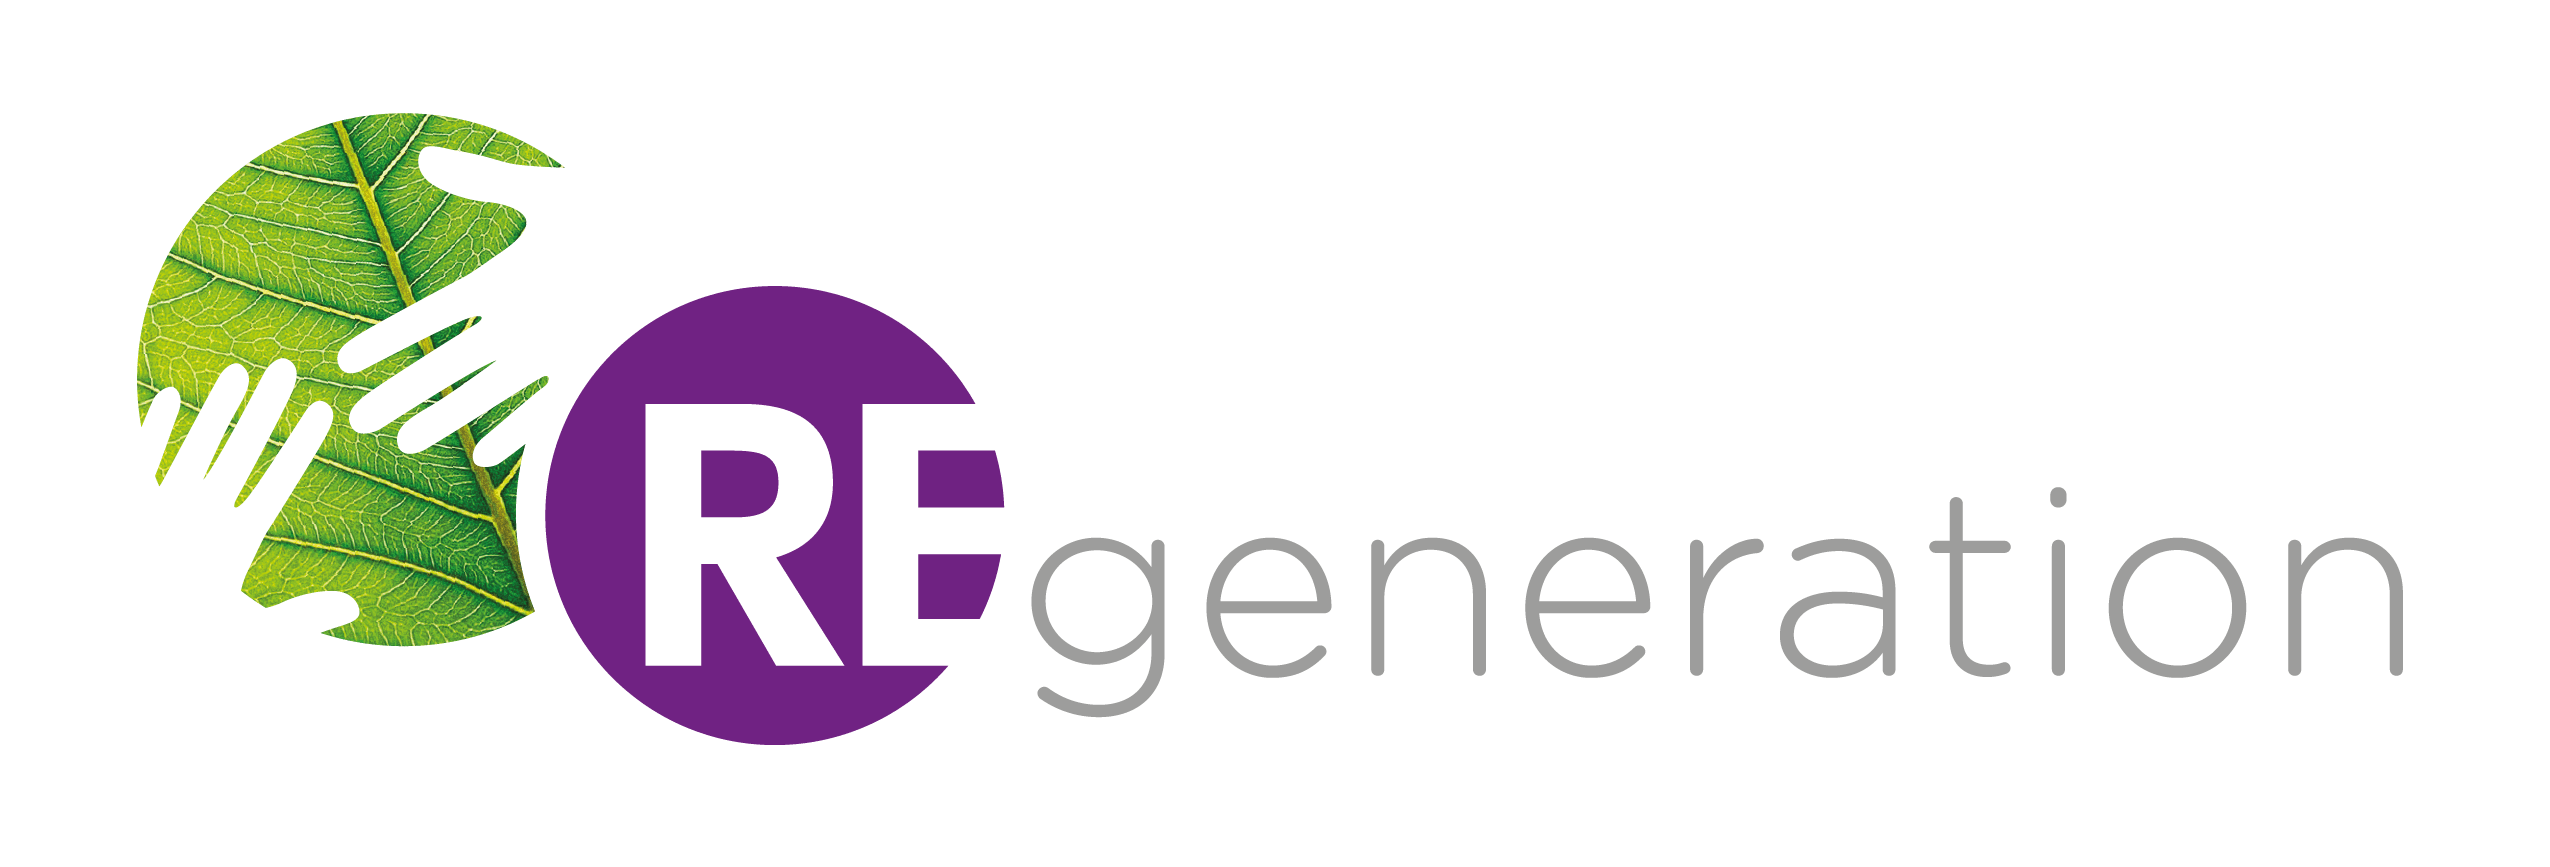 ReGeneration-Logo-03